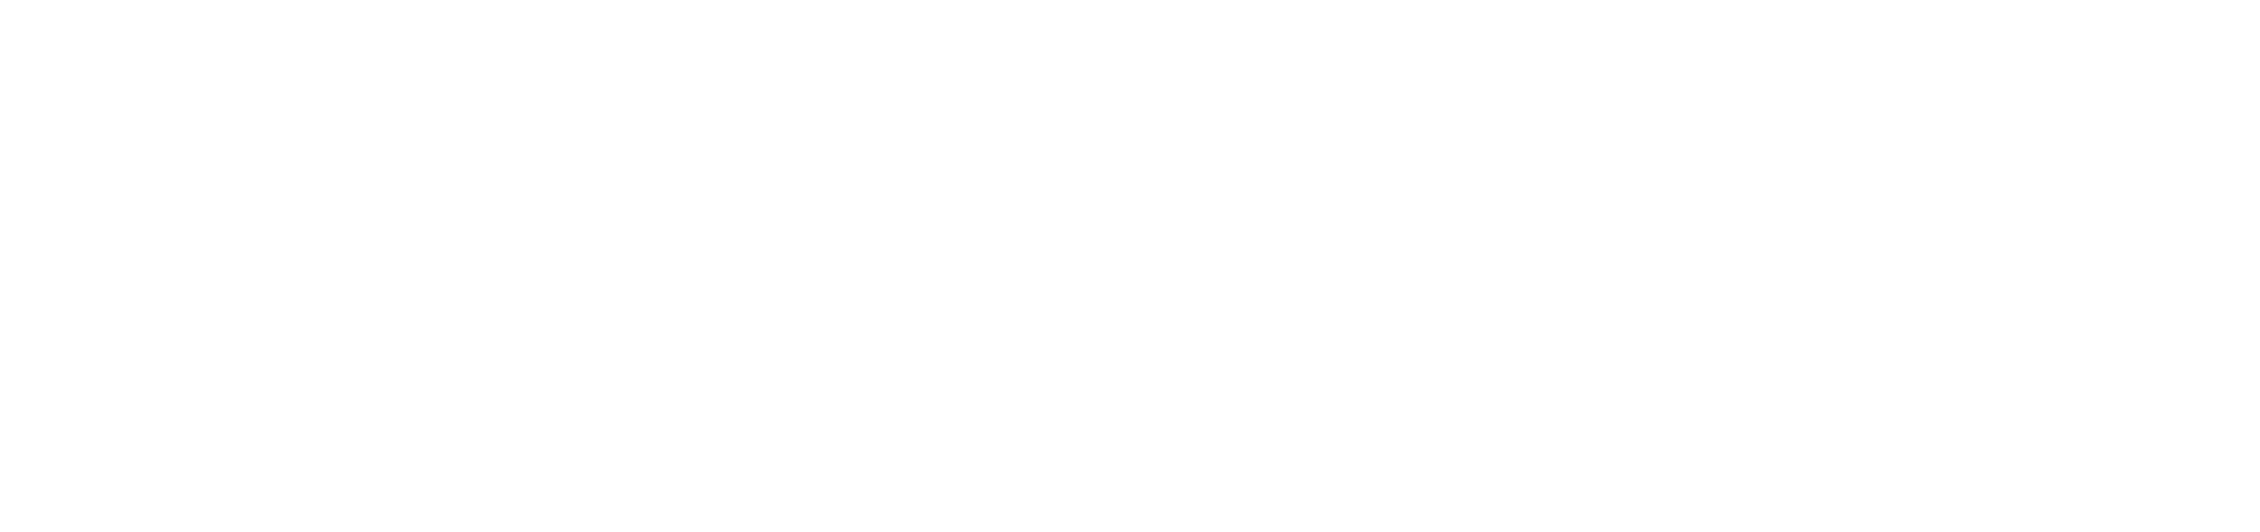 Novus Plastic Polishes – MuseuM Services Corporation